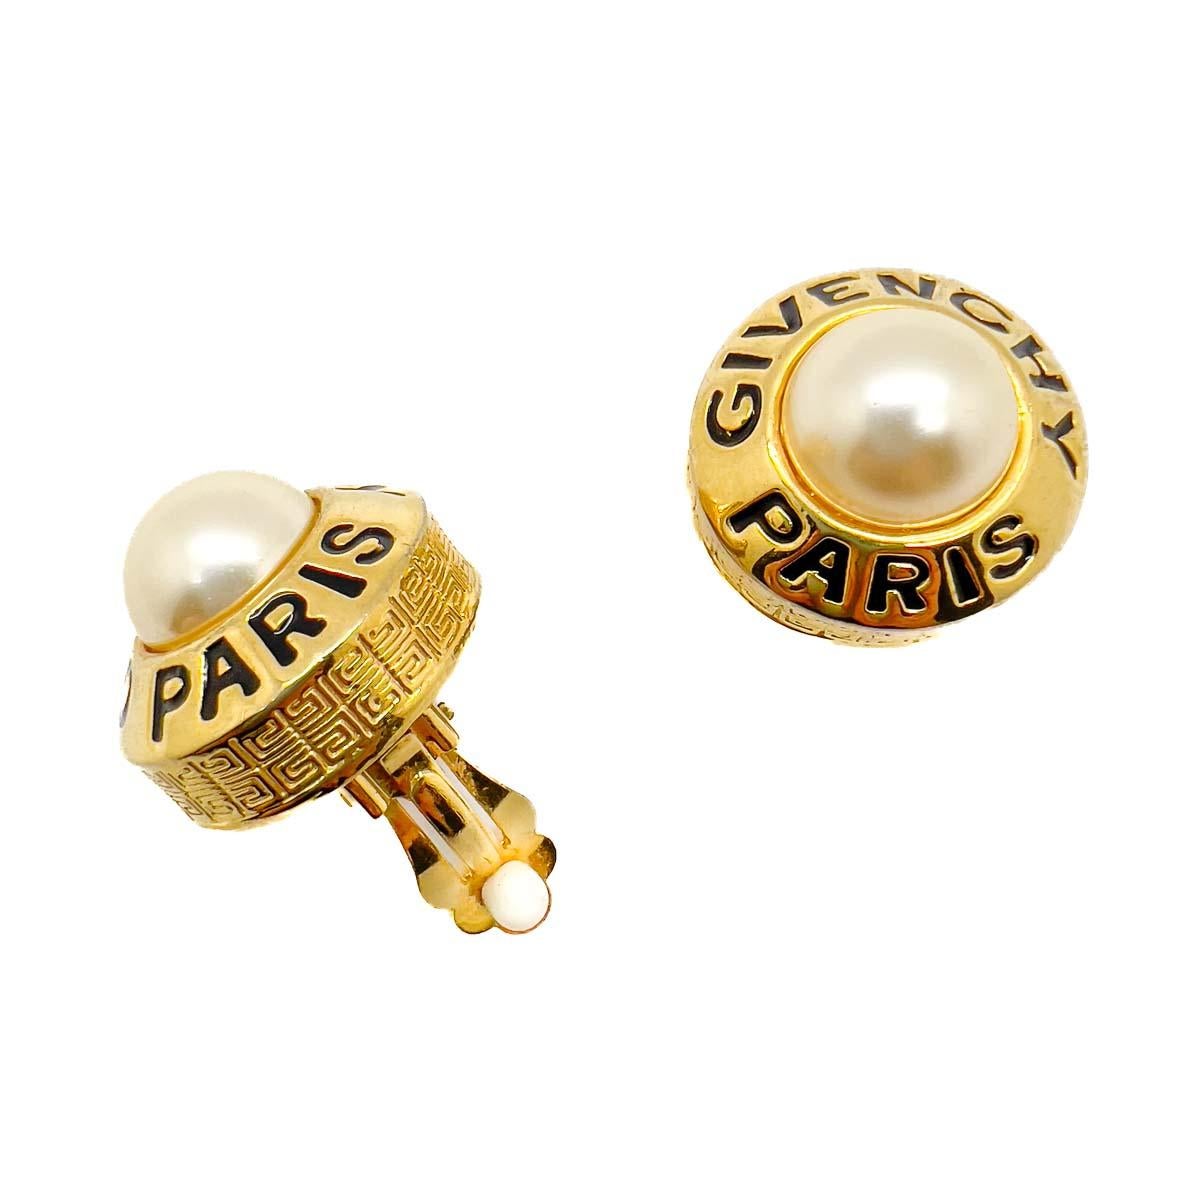 Une fabuleuse paire de boucles d'oreilles vintage Givenchy avec logo en perle. Un double classique de la couture, les perles et le logo s'affichent avec audace dans la conception de ces boucles d'oreilles à la fois cool et élégantes de la Maison. Un